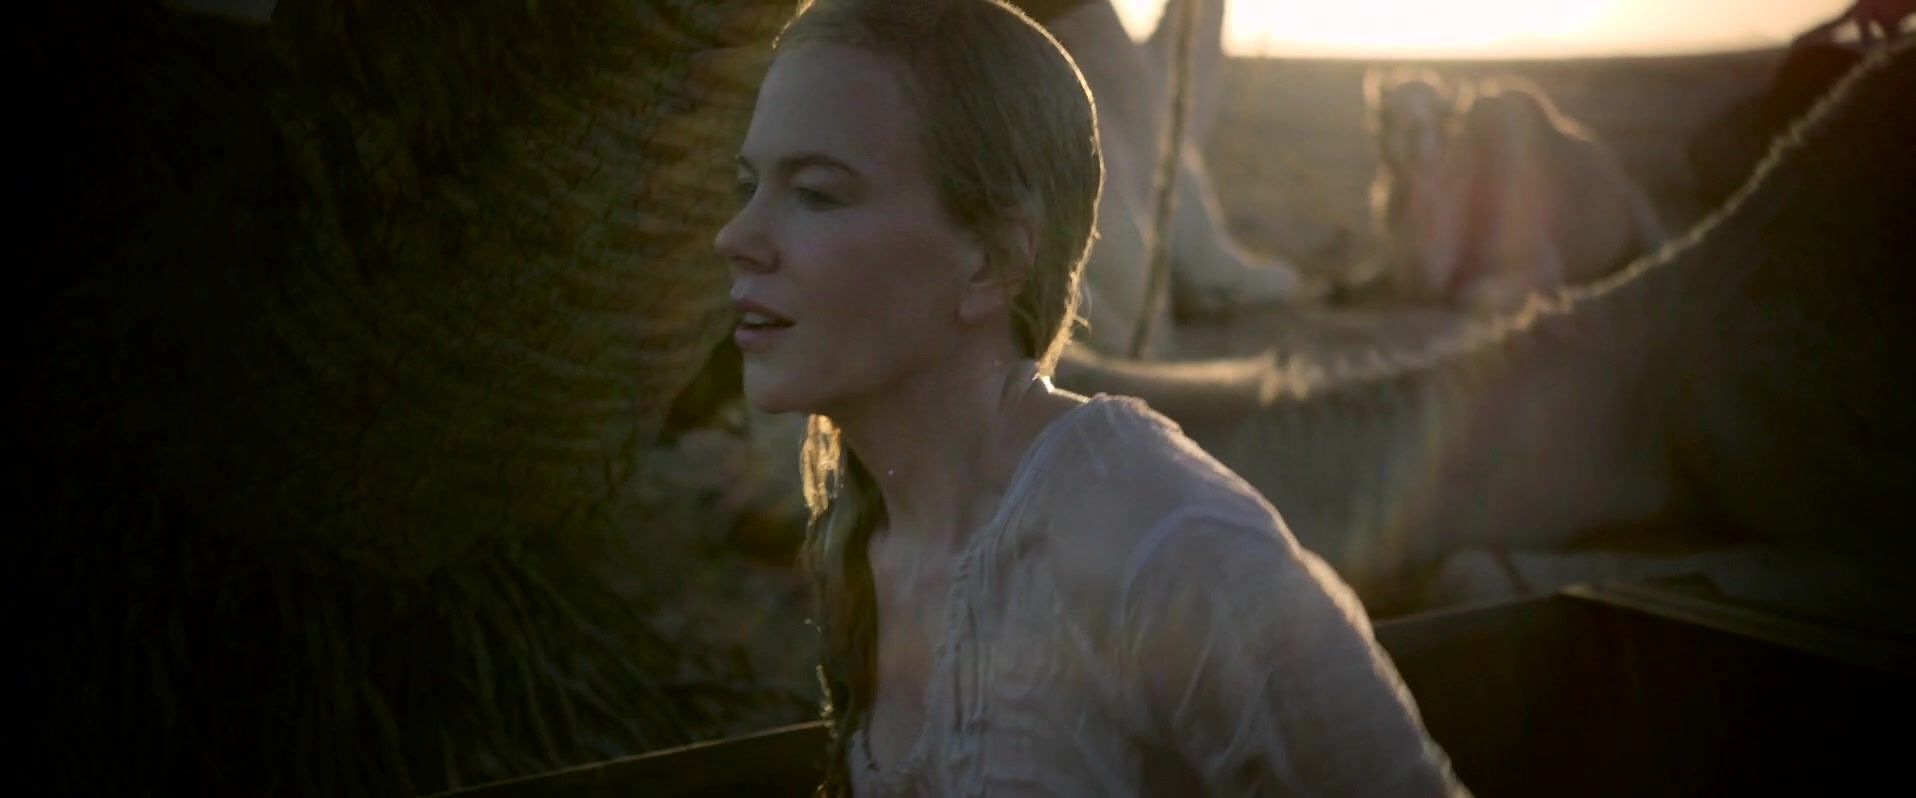 Shameless Nicole Kidman nude - Queen of the Desert (2016) OxoTube